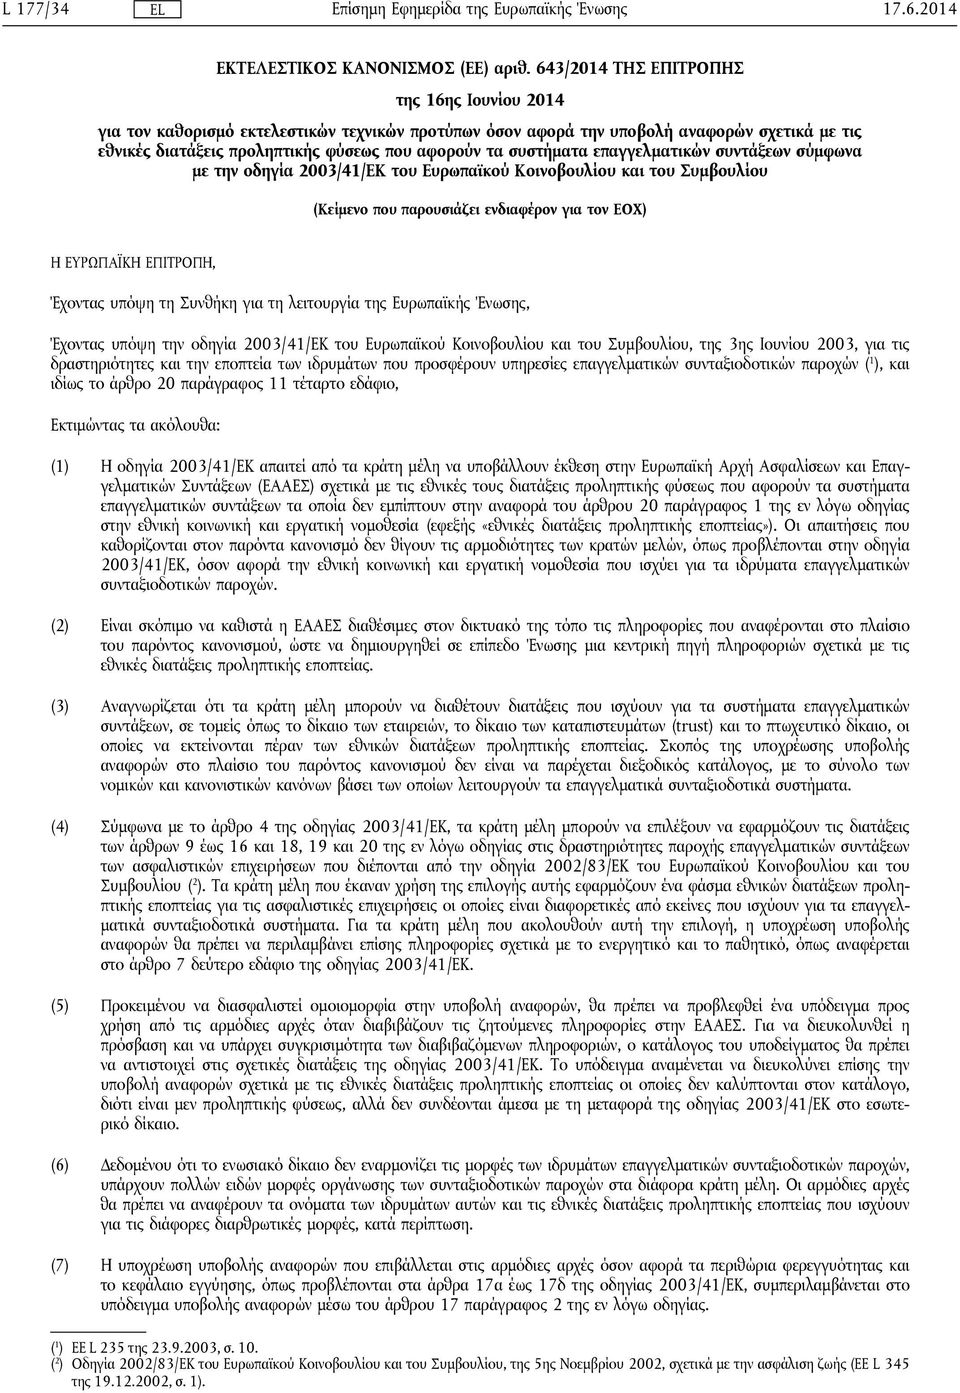 συστήματα επαγγελματικών συντάξεων σύμφωνα με την οδηγία 2003/41/ΕΚ του Ευρωπαϊκού Κοινοβουλίου και του Συμβουλίου (Κείμενο που παρουσιάζει ενδιαφέρον για τον ΕΟΧ) Η ΕΥΡΩΠΑΪΚΗ ΕΠΙΤΡΟΠΗ, Έχοντας υπόψη